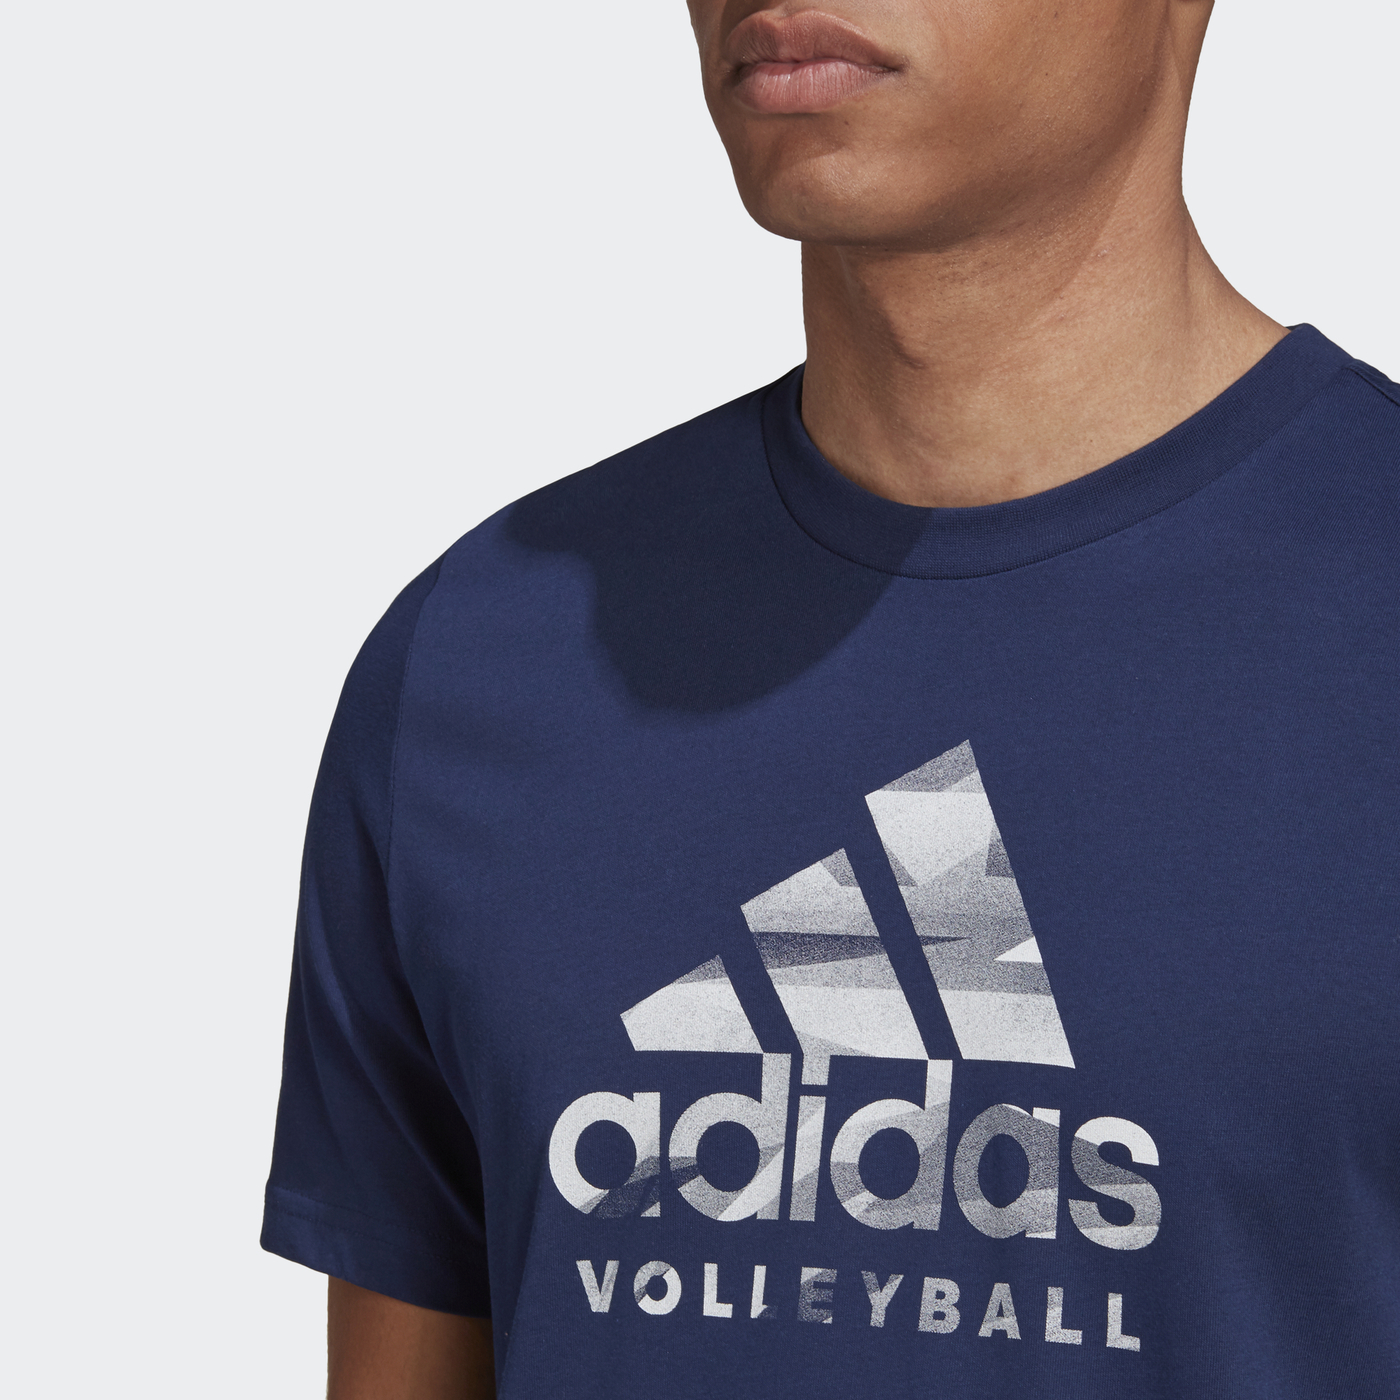 Купить футболку вб. Adidas Volleyball футболка. Футболки с ВБ. Винтажные футболки адидас. Футболки с ВБ артикулы мужские.